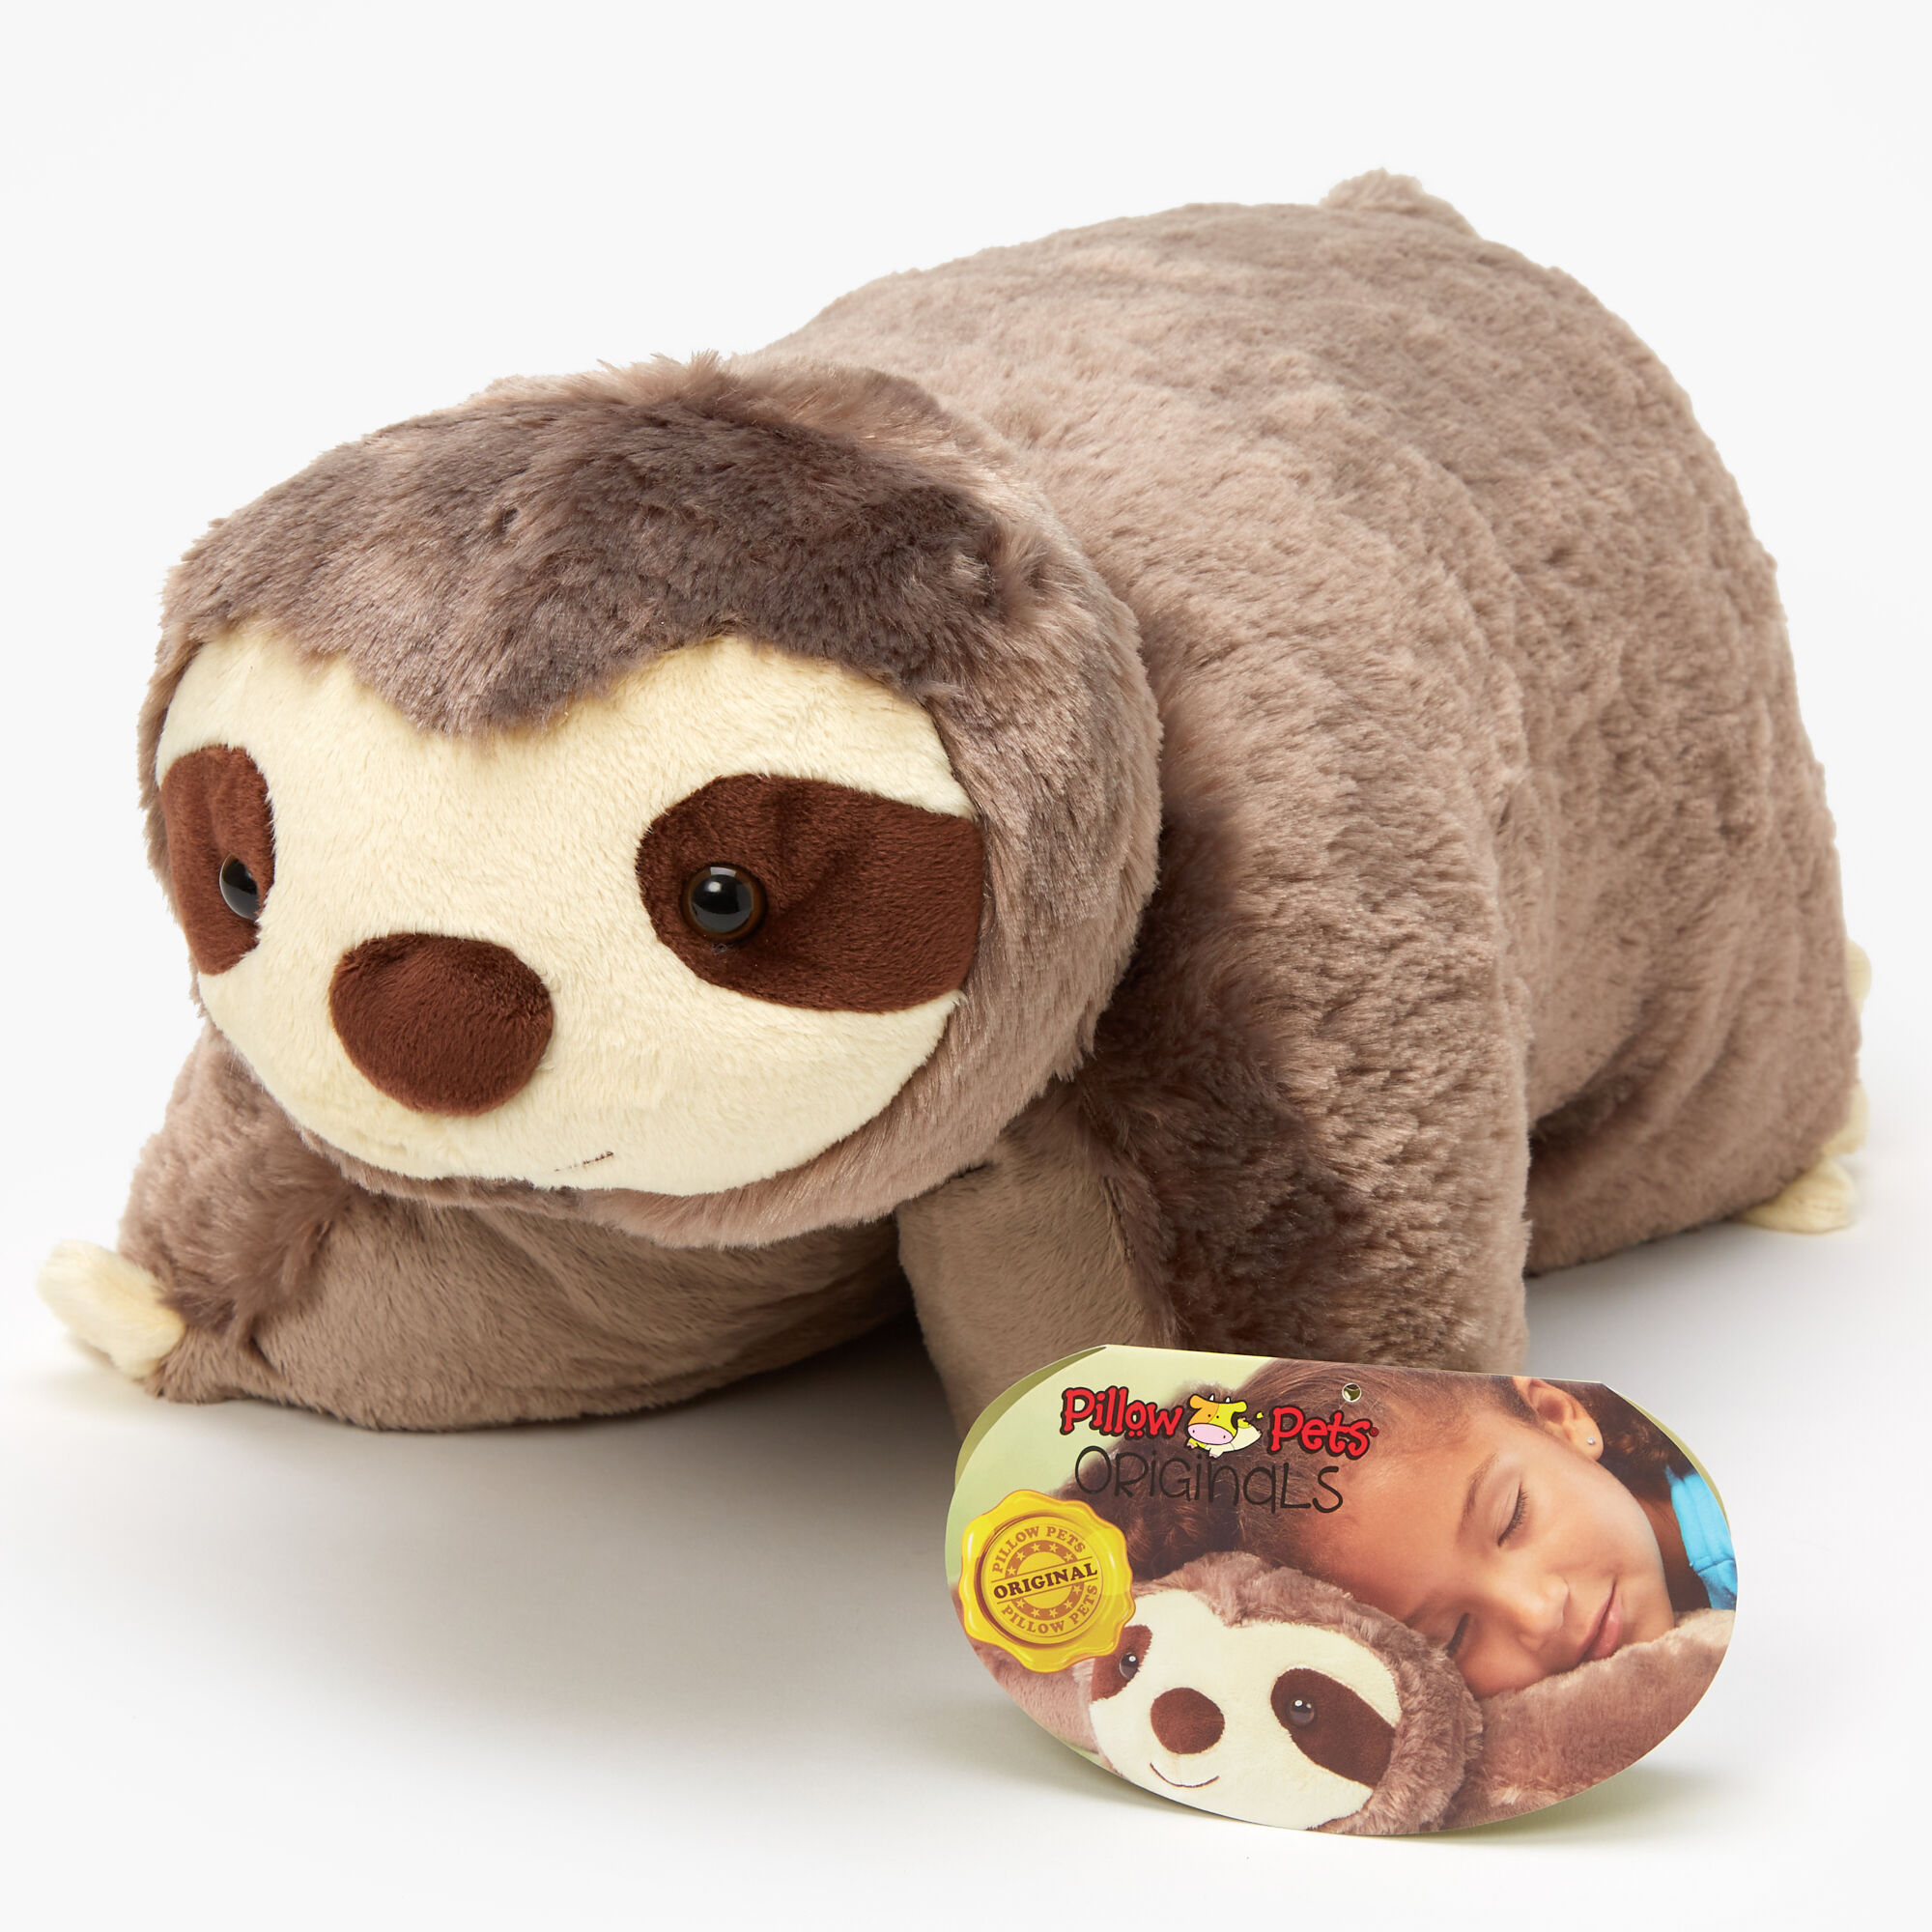 sloth plush pillow Off 52% - canerofset.com